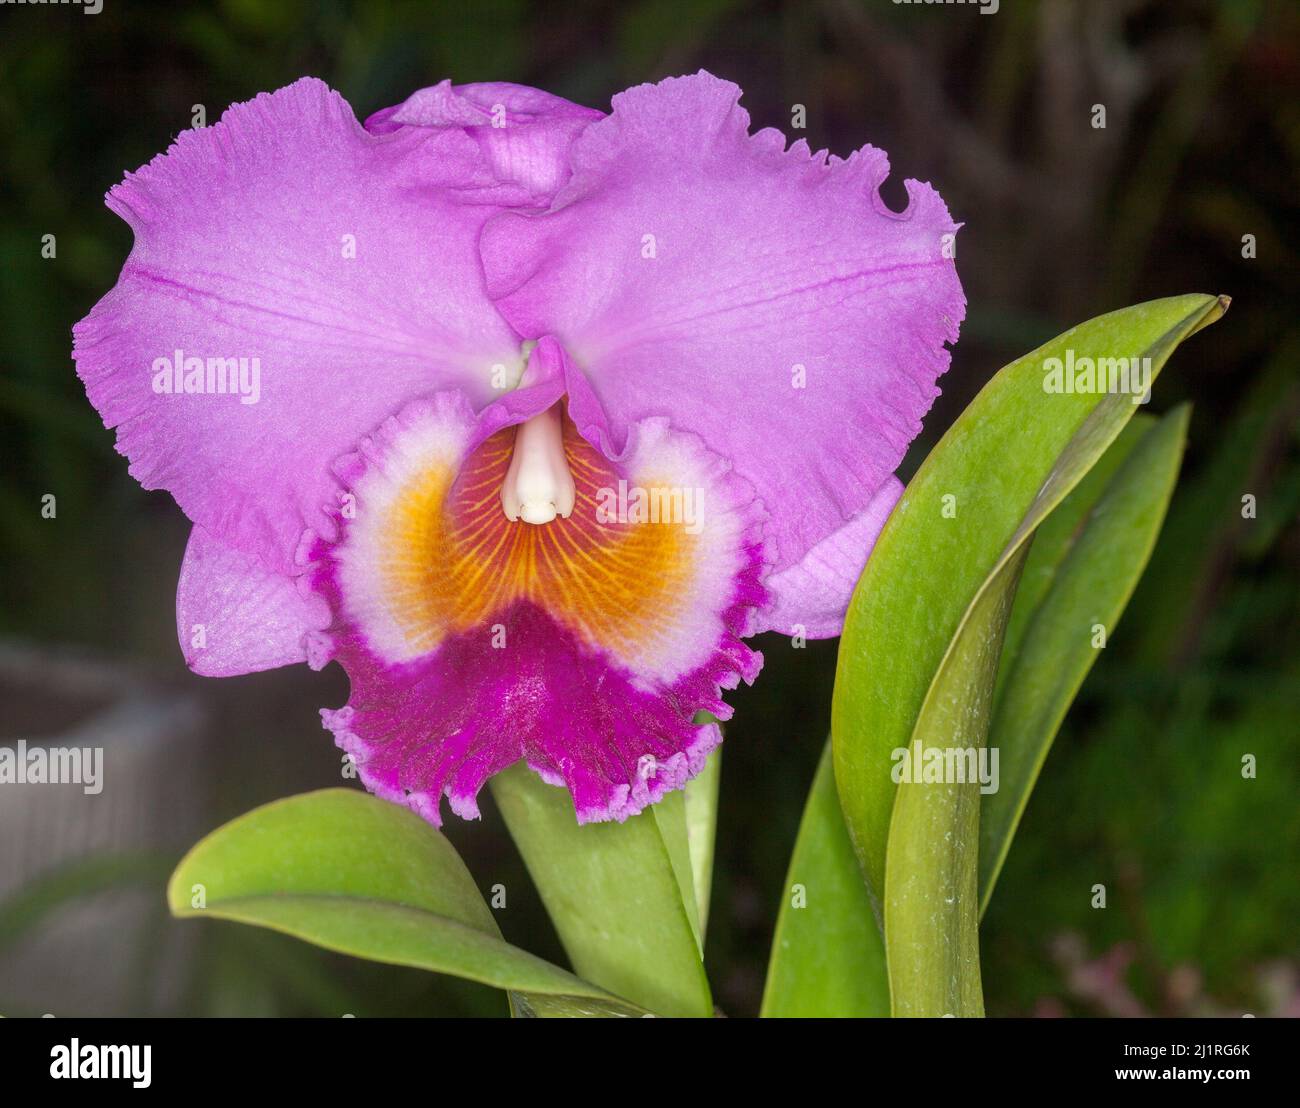 Grande et spectaculaire fleur rose / mauve parfumé et feuilles vertes d'orchidée sur fond vert foncé Banque D'Images